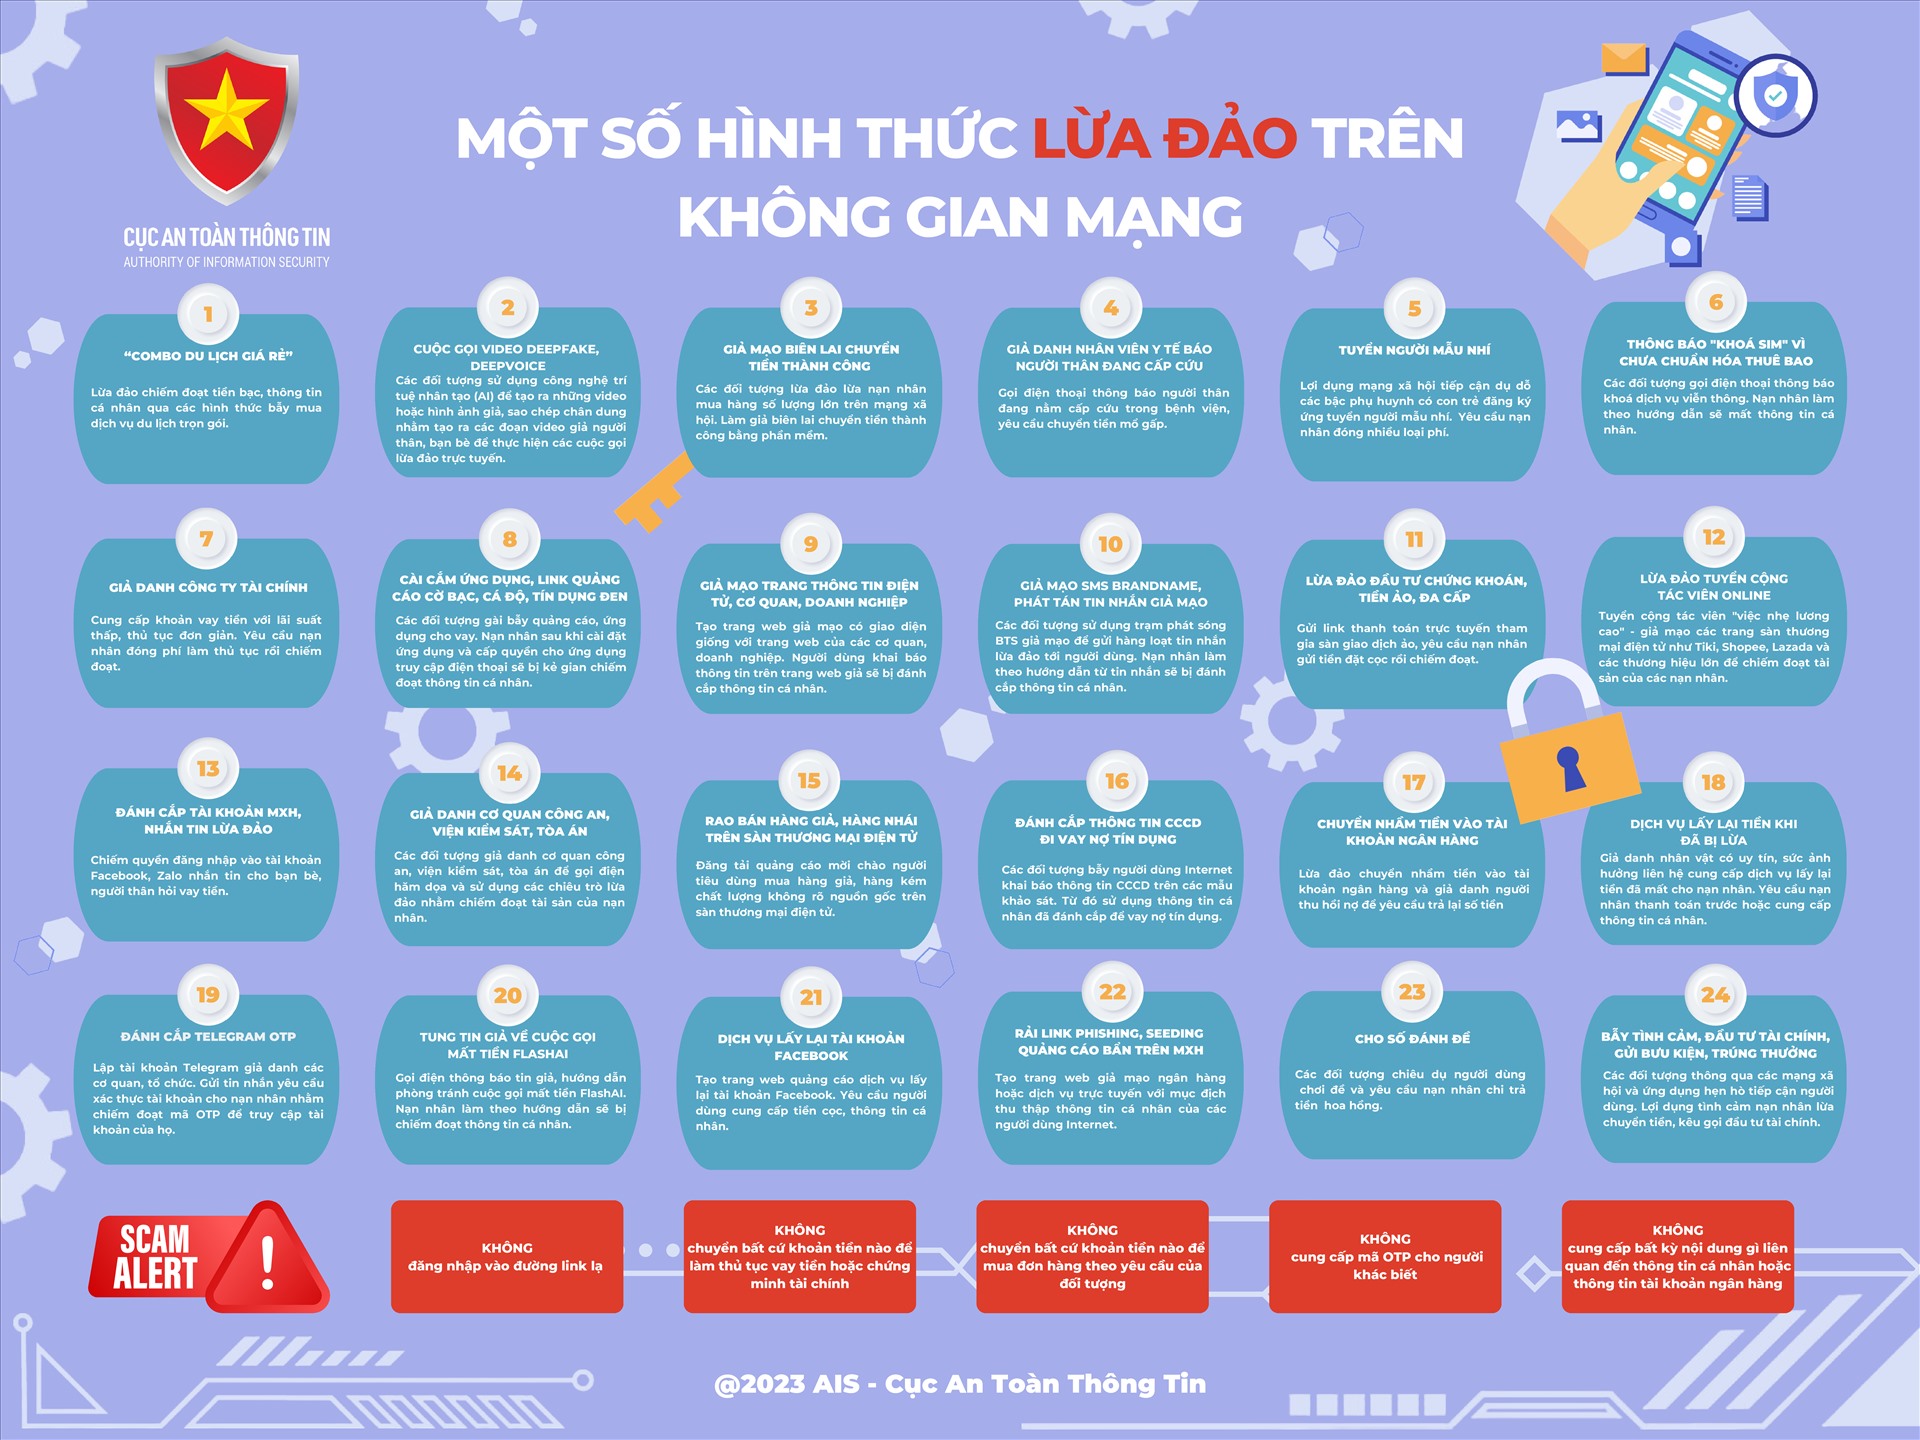 24 hình thức lừa đảo trực tuyến đang diễn ra trên không gian mạng Việt Nam và một số lưu ý để an toàn trên mạng, theo khuyến nghị của Cục An toàn thông tin, Bộ TTTT. 